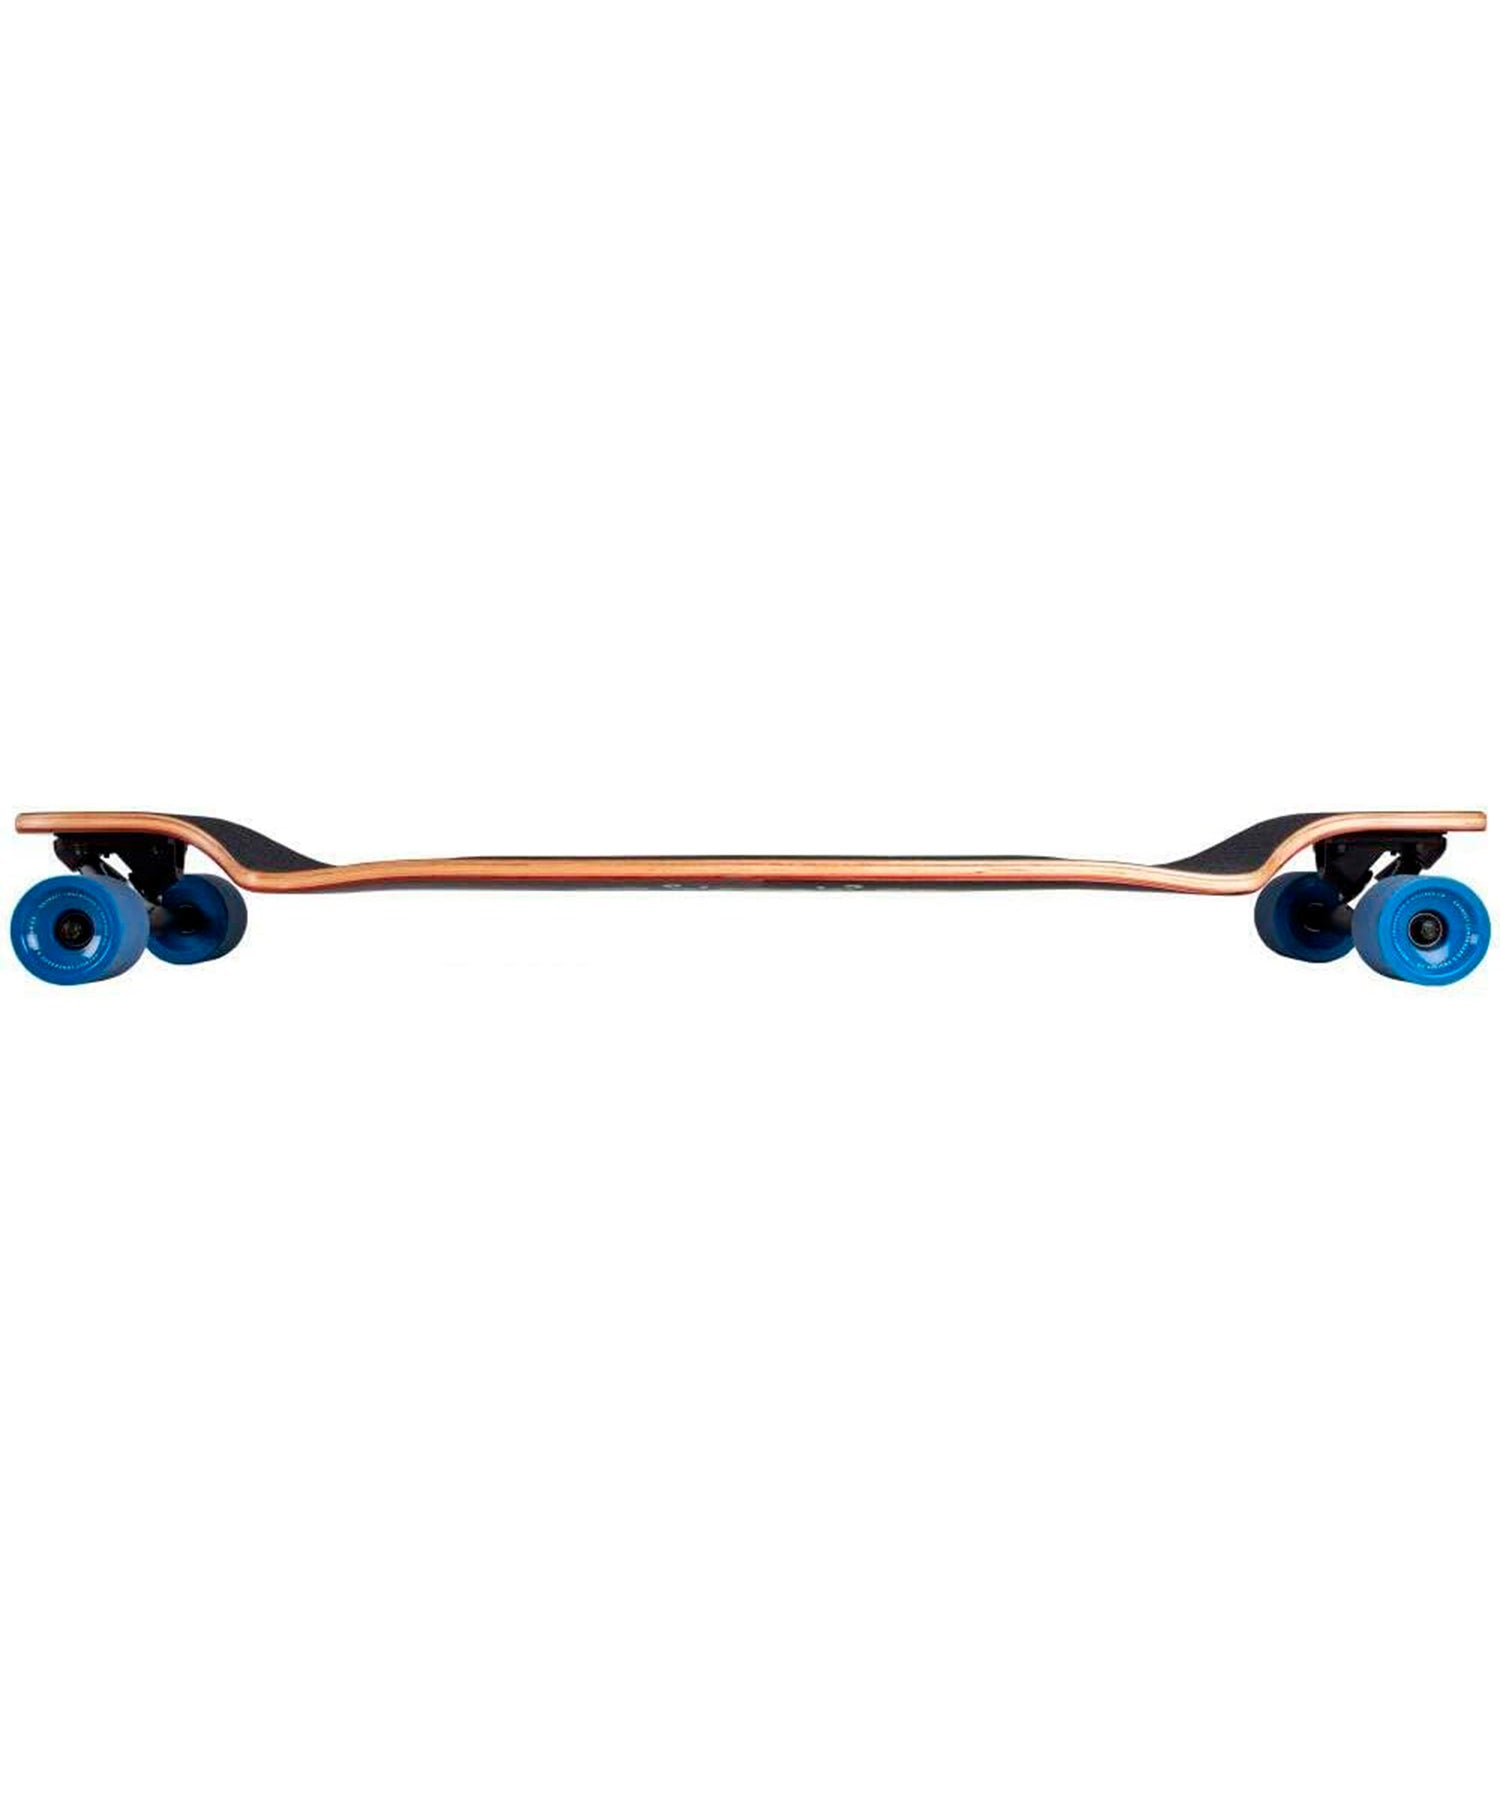 longboard-dstreet-tripout-drop-down-completo-a-punto-para-patinar-perfecto para-freeride-y-downhill-40-pulgadas.